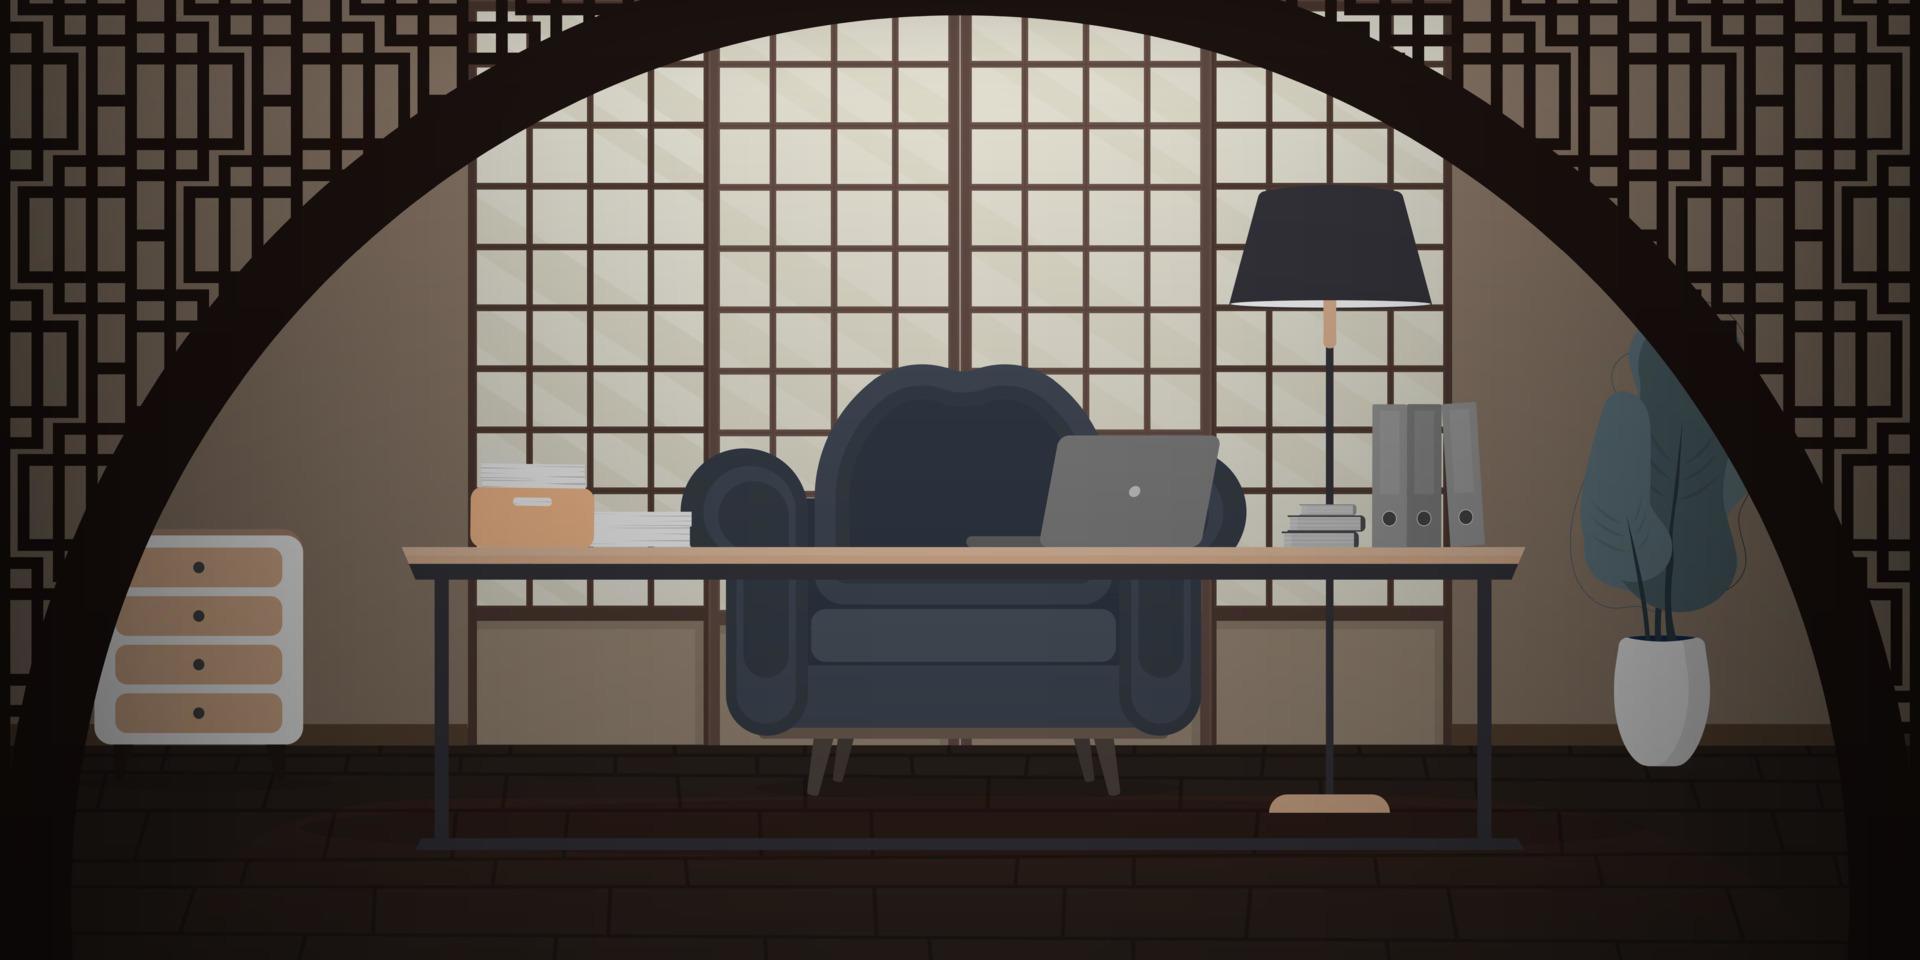 ilustração em vetor de um estudo ou escritório em estilo japonês. conceito de freelance ou treinamento.